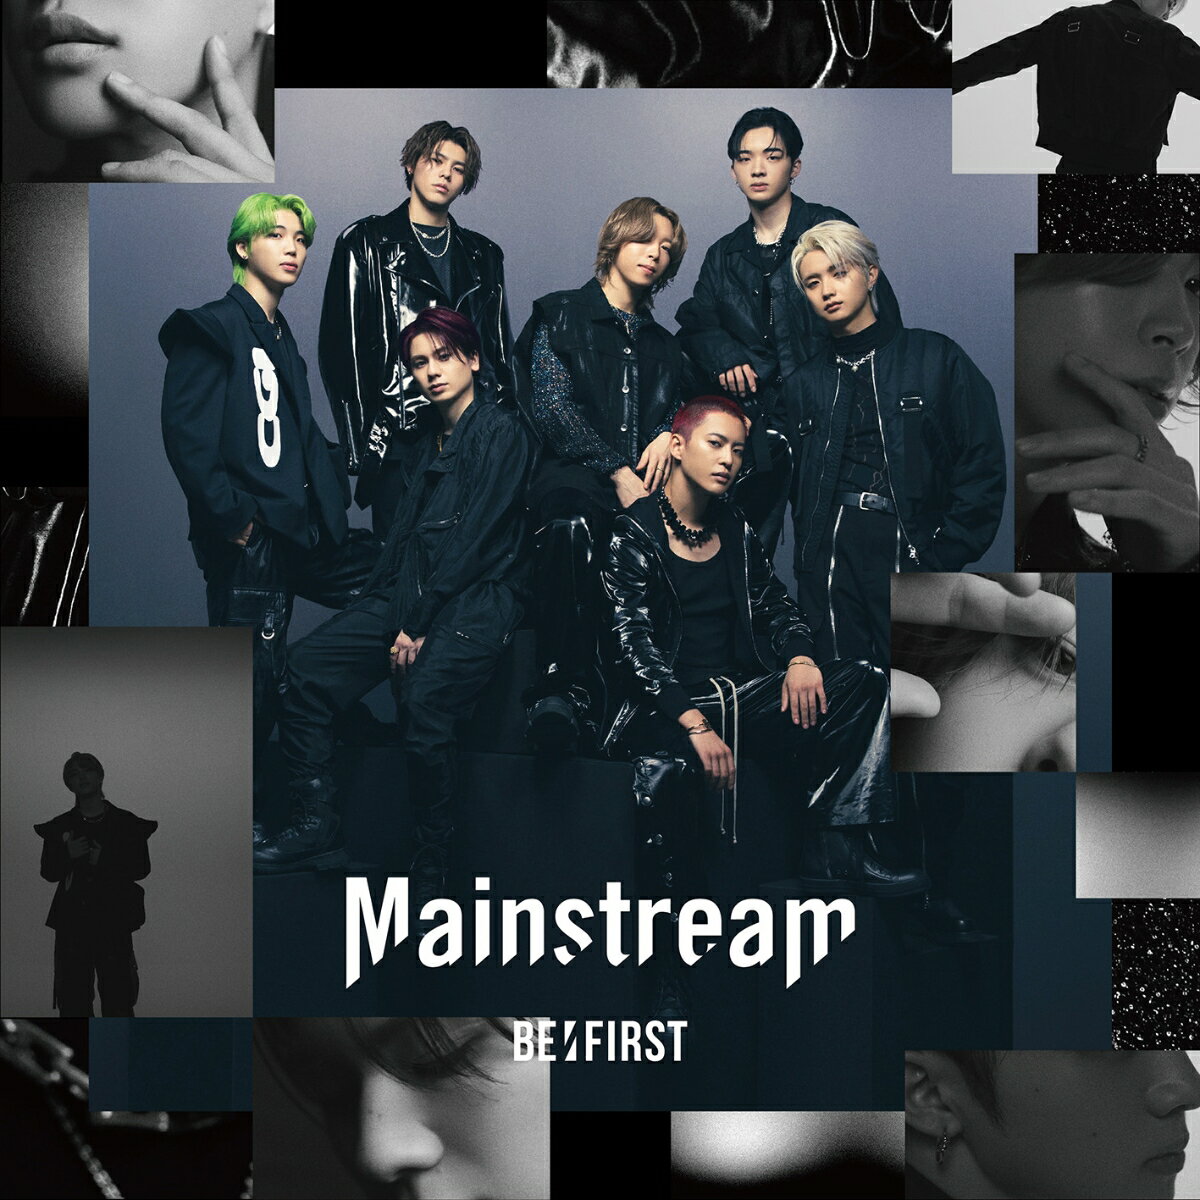 Mainstream (CD＋Blu-ray＋スマプラ) 【MV盤】